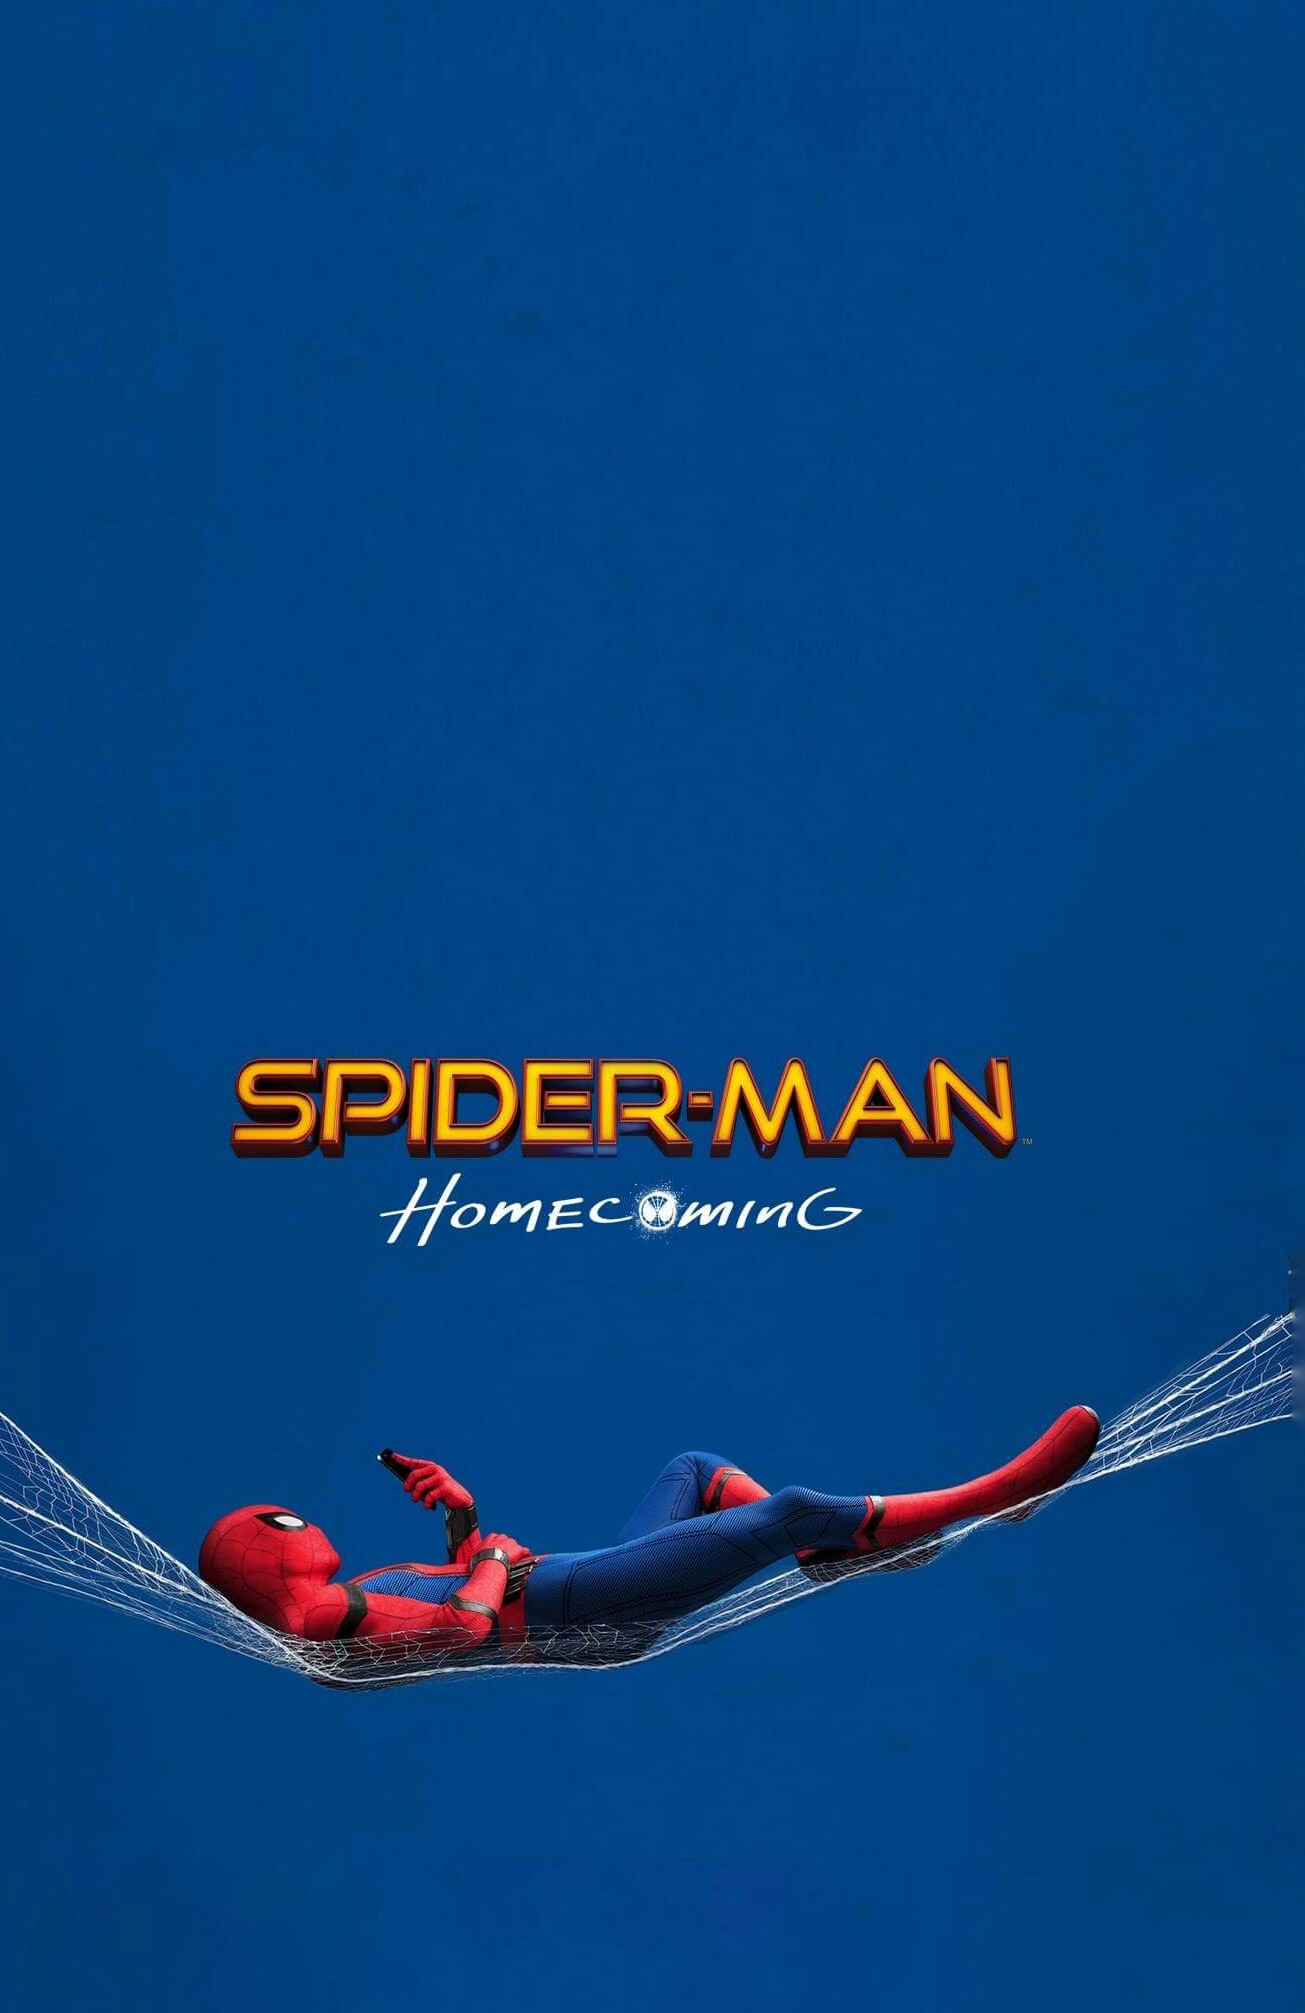 Fondo De Spiderman Homecoming - HD Wallpaper 